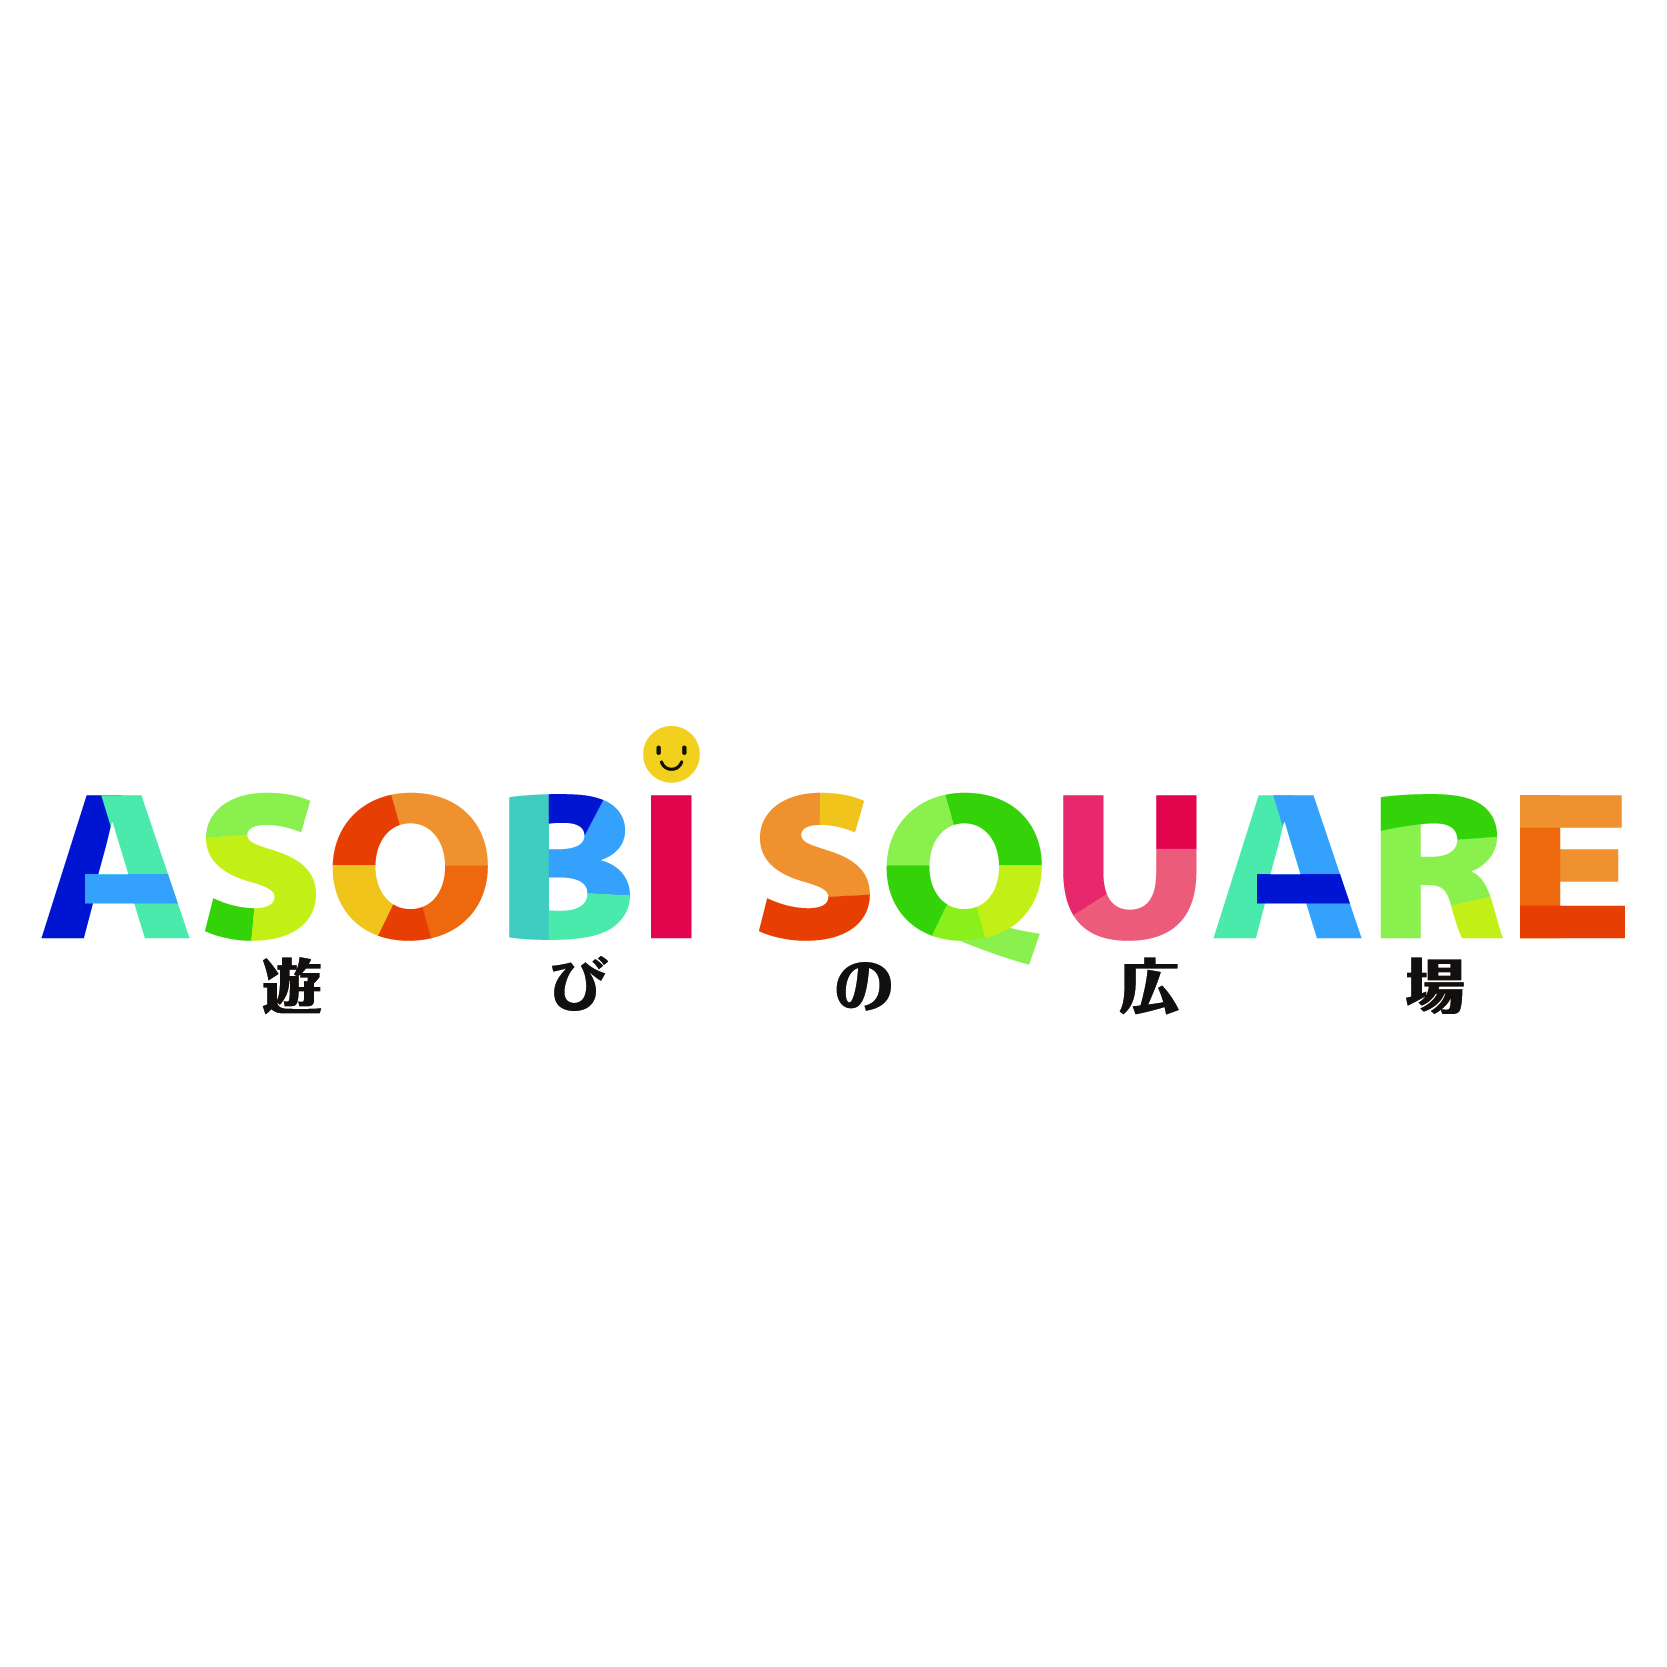 Asobi Square